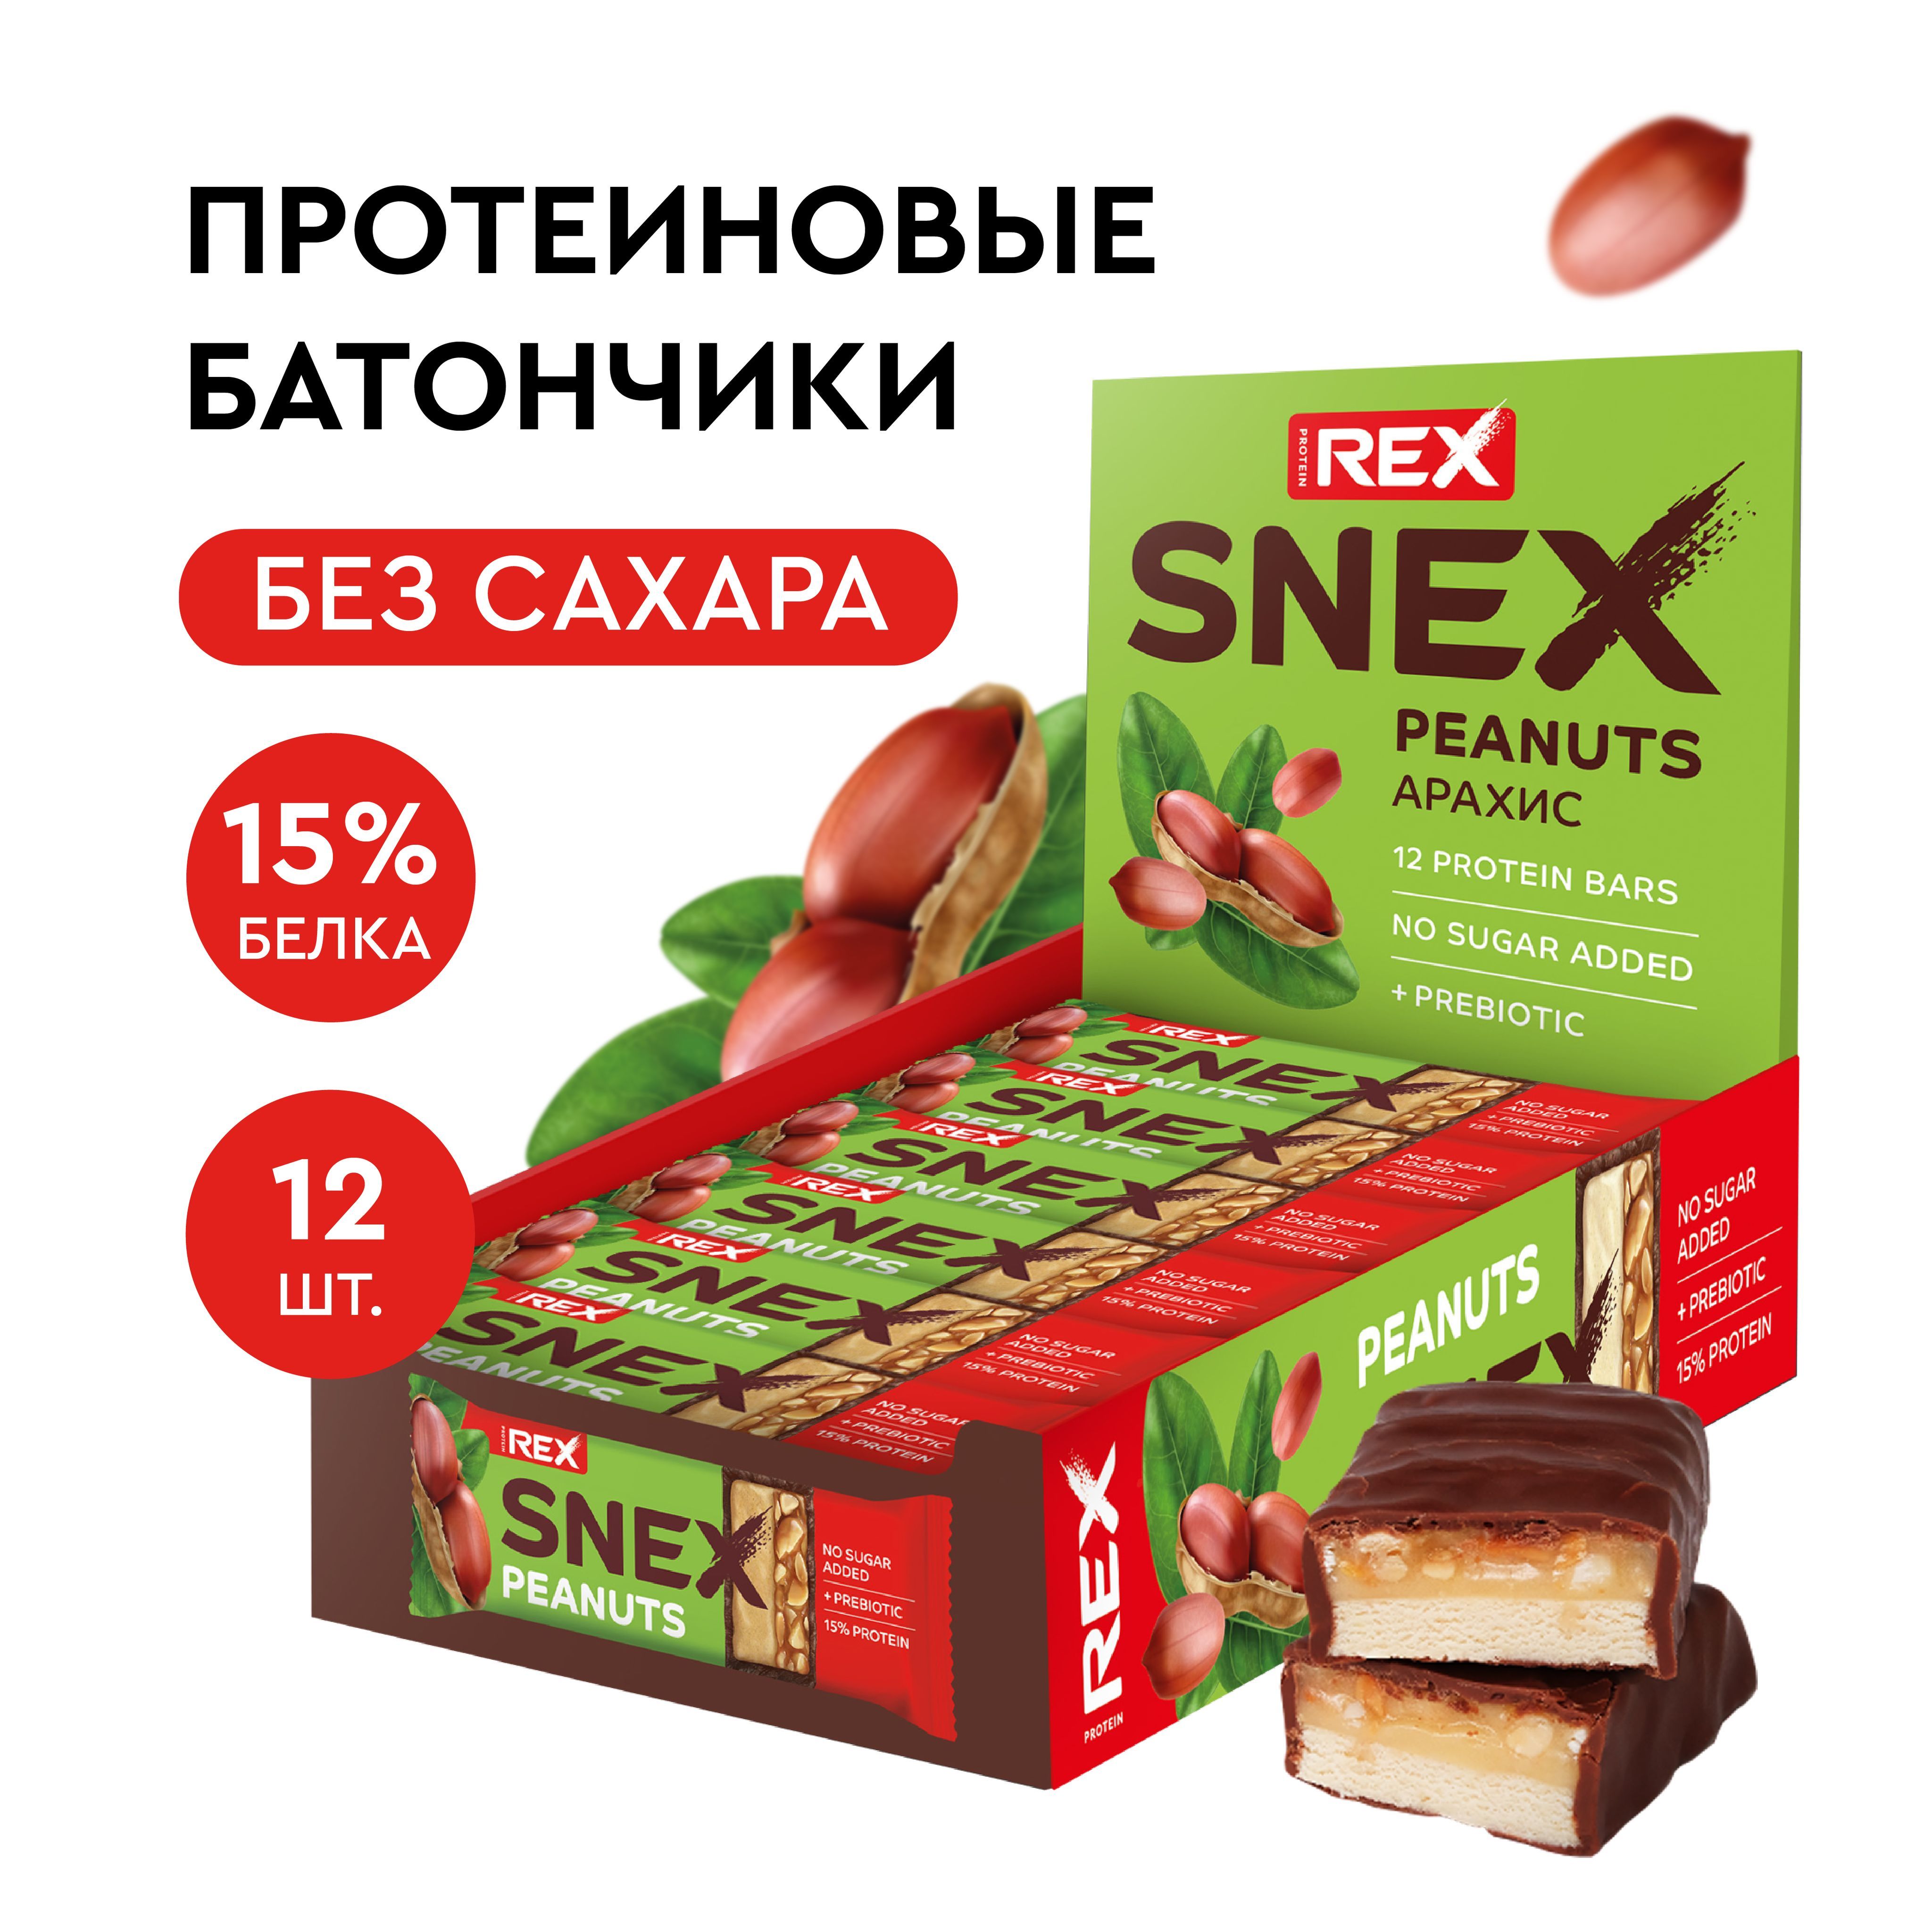 Snex батончики. Протеиновые шоколадки без сахара отзывы.